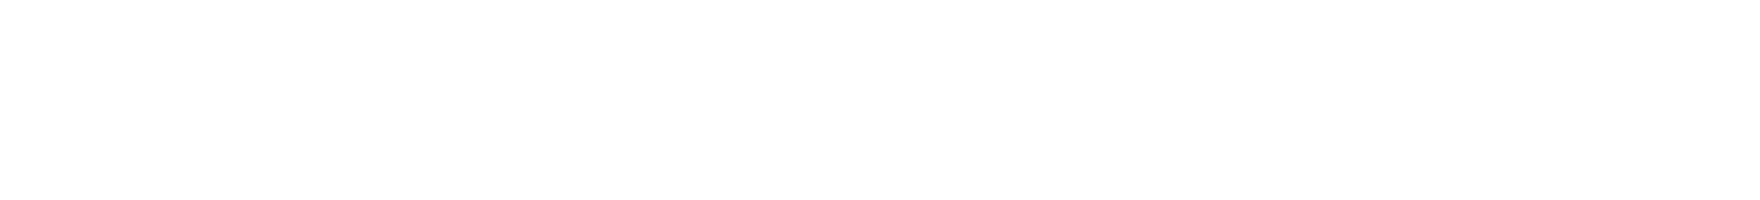 Villa Liberty Mugello logo